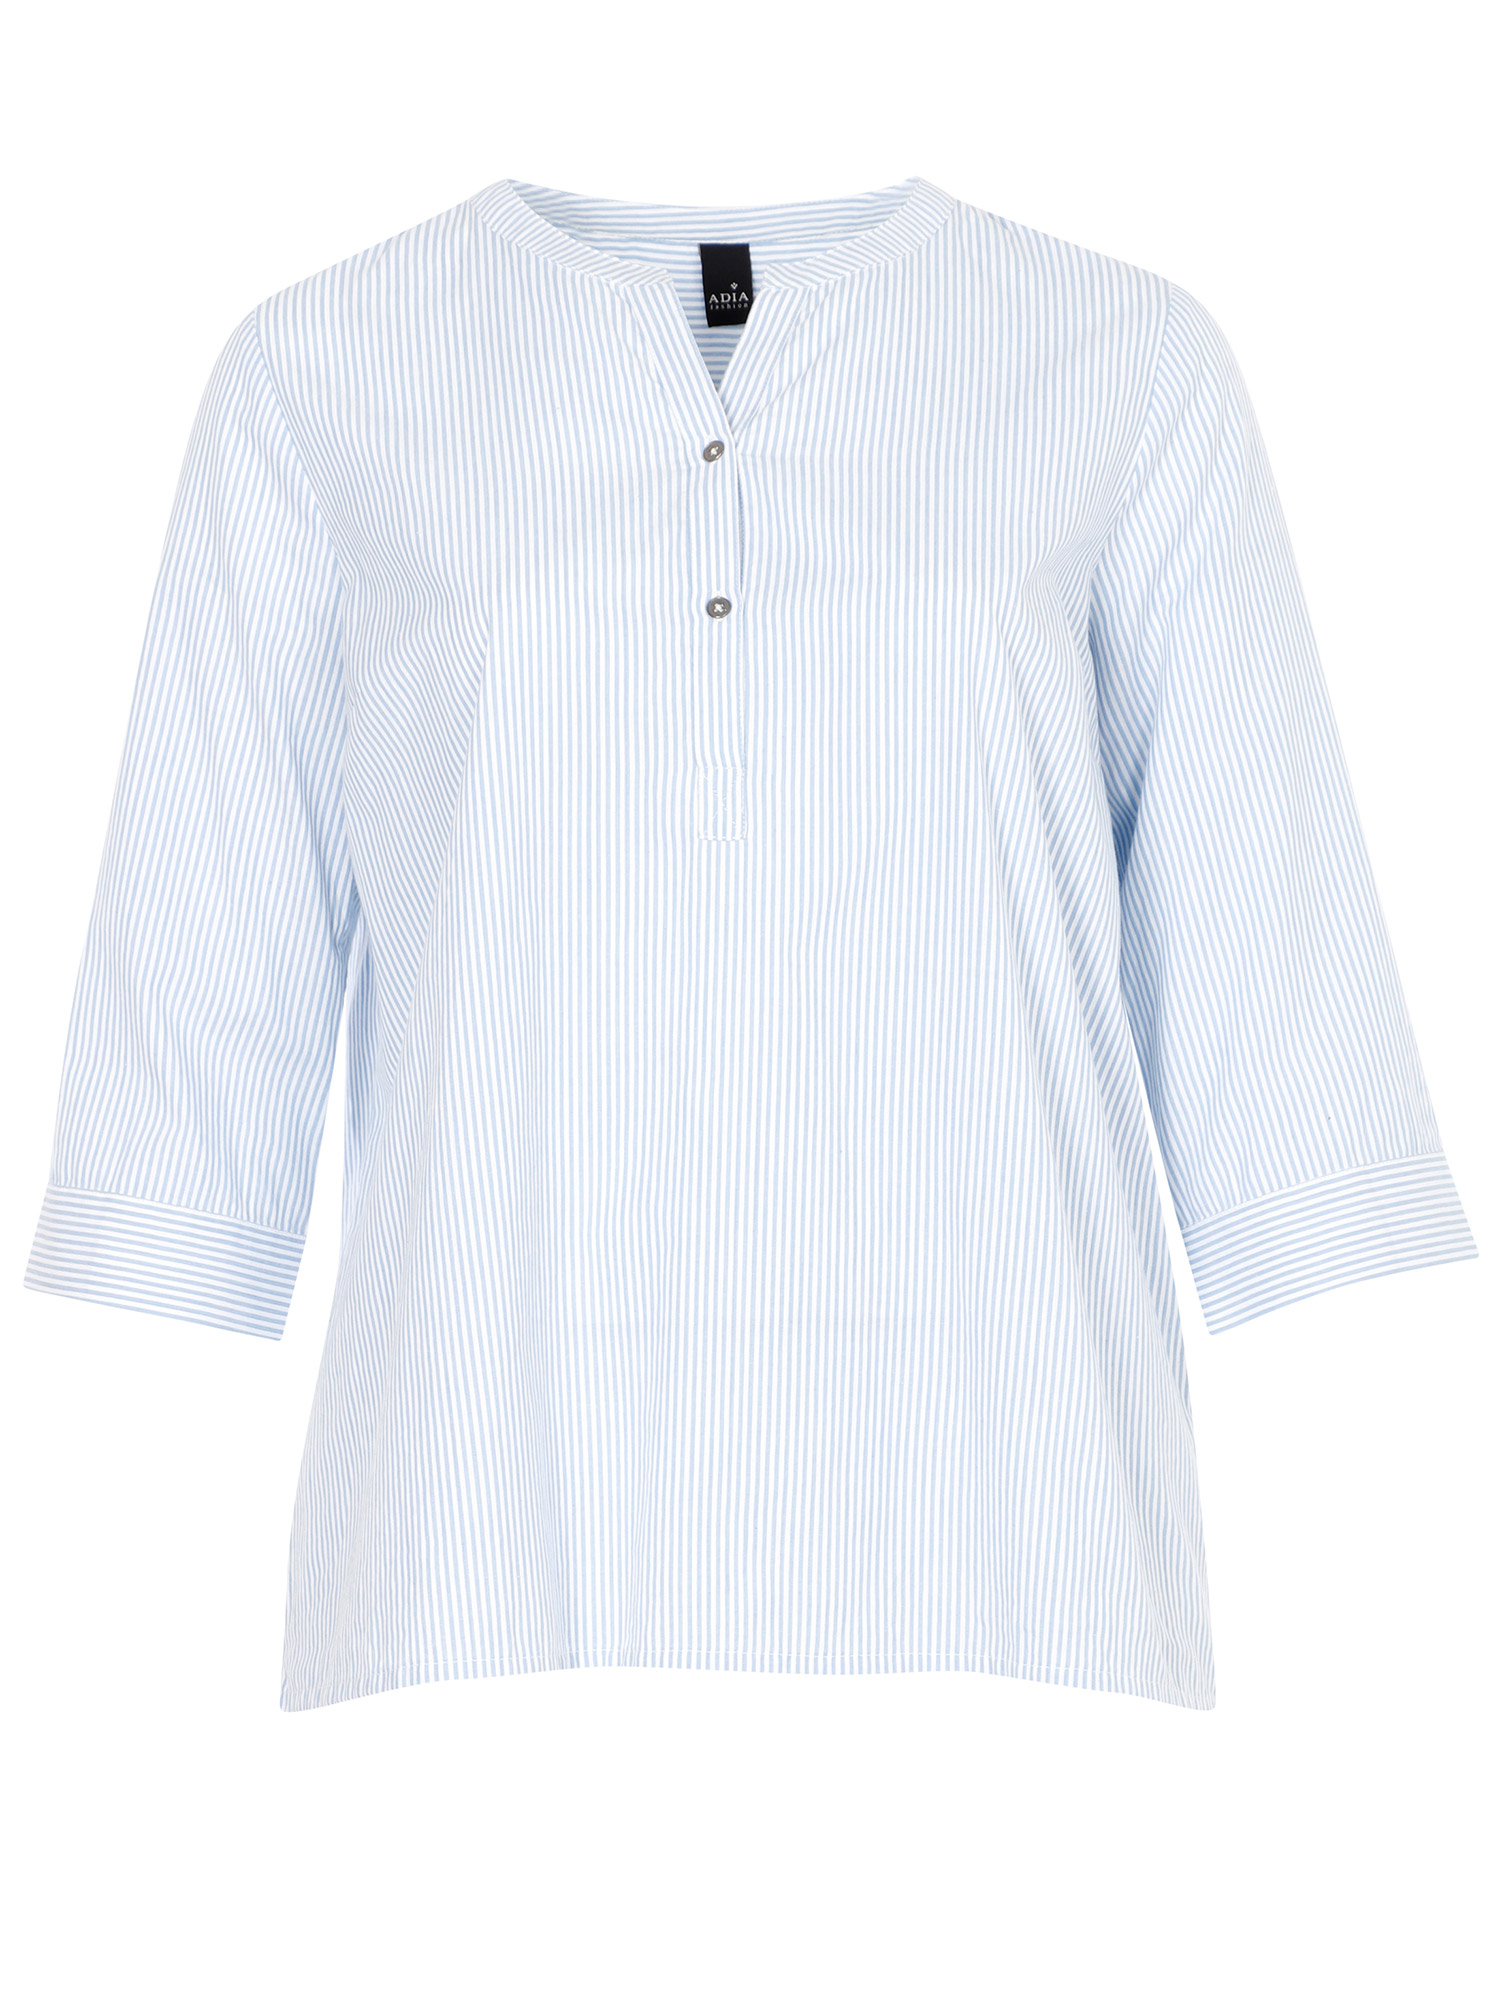 Bomullsskjorta med blå/vita ränder fra Adia